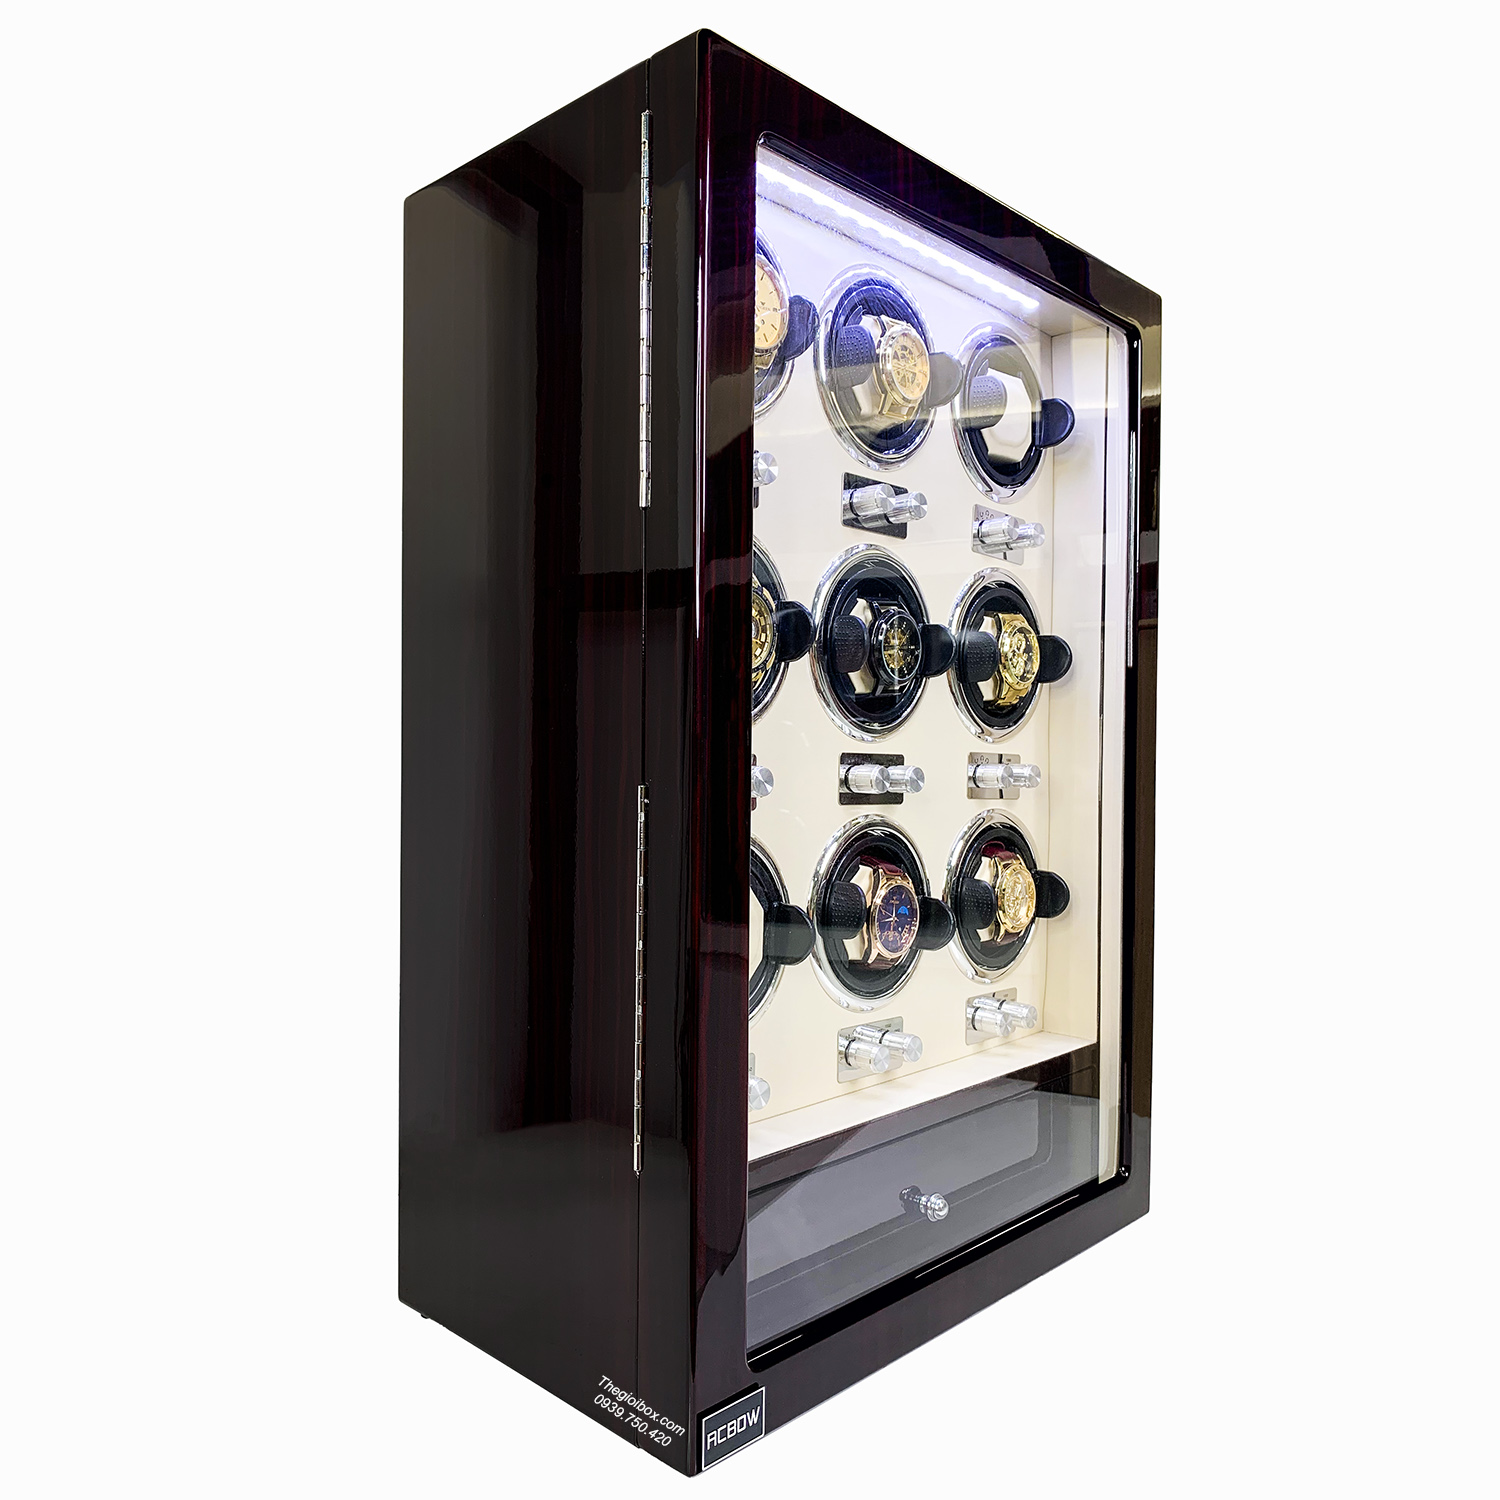 Tủ xoay đồng hồ cơ ACBOW cao cấp - 9 xoay + 6 tĩnh - LED - Ổ khóa - Giá rẻ